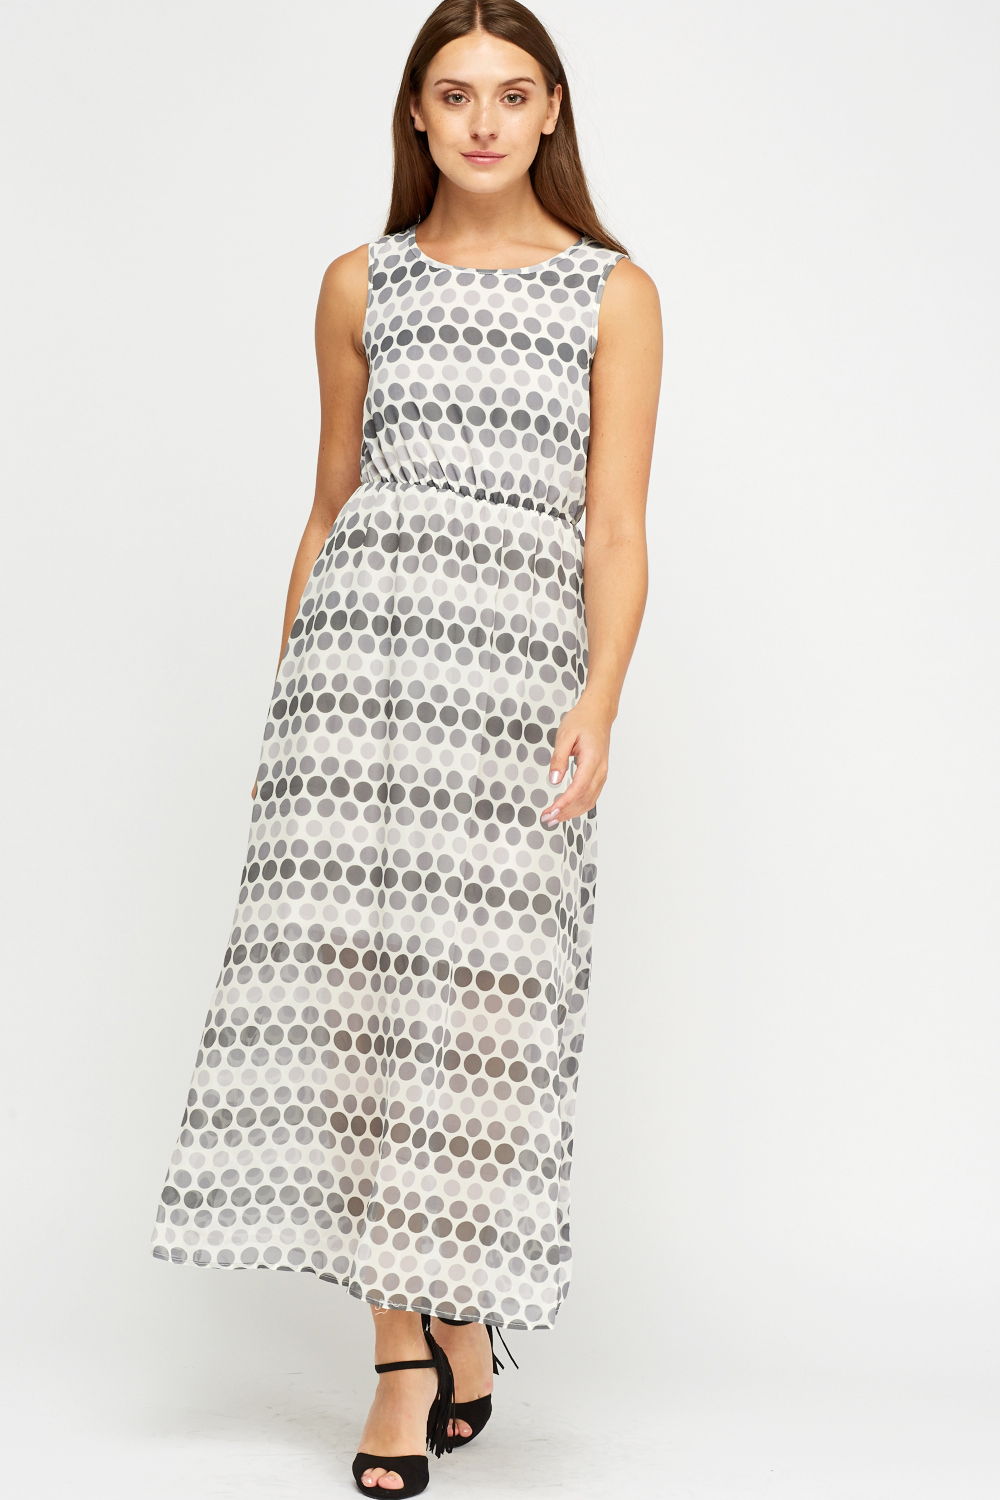 Polka Dot Printed Sheer Maxi Dress - Just $4